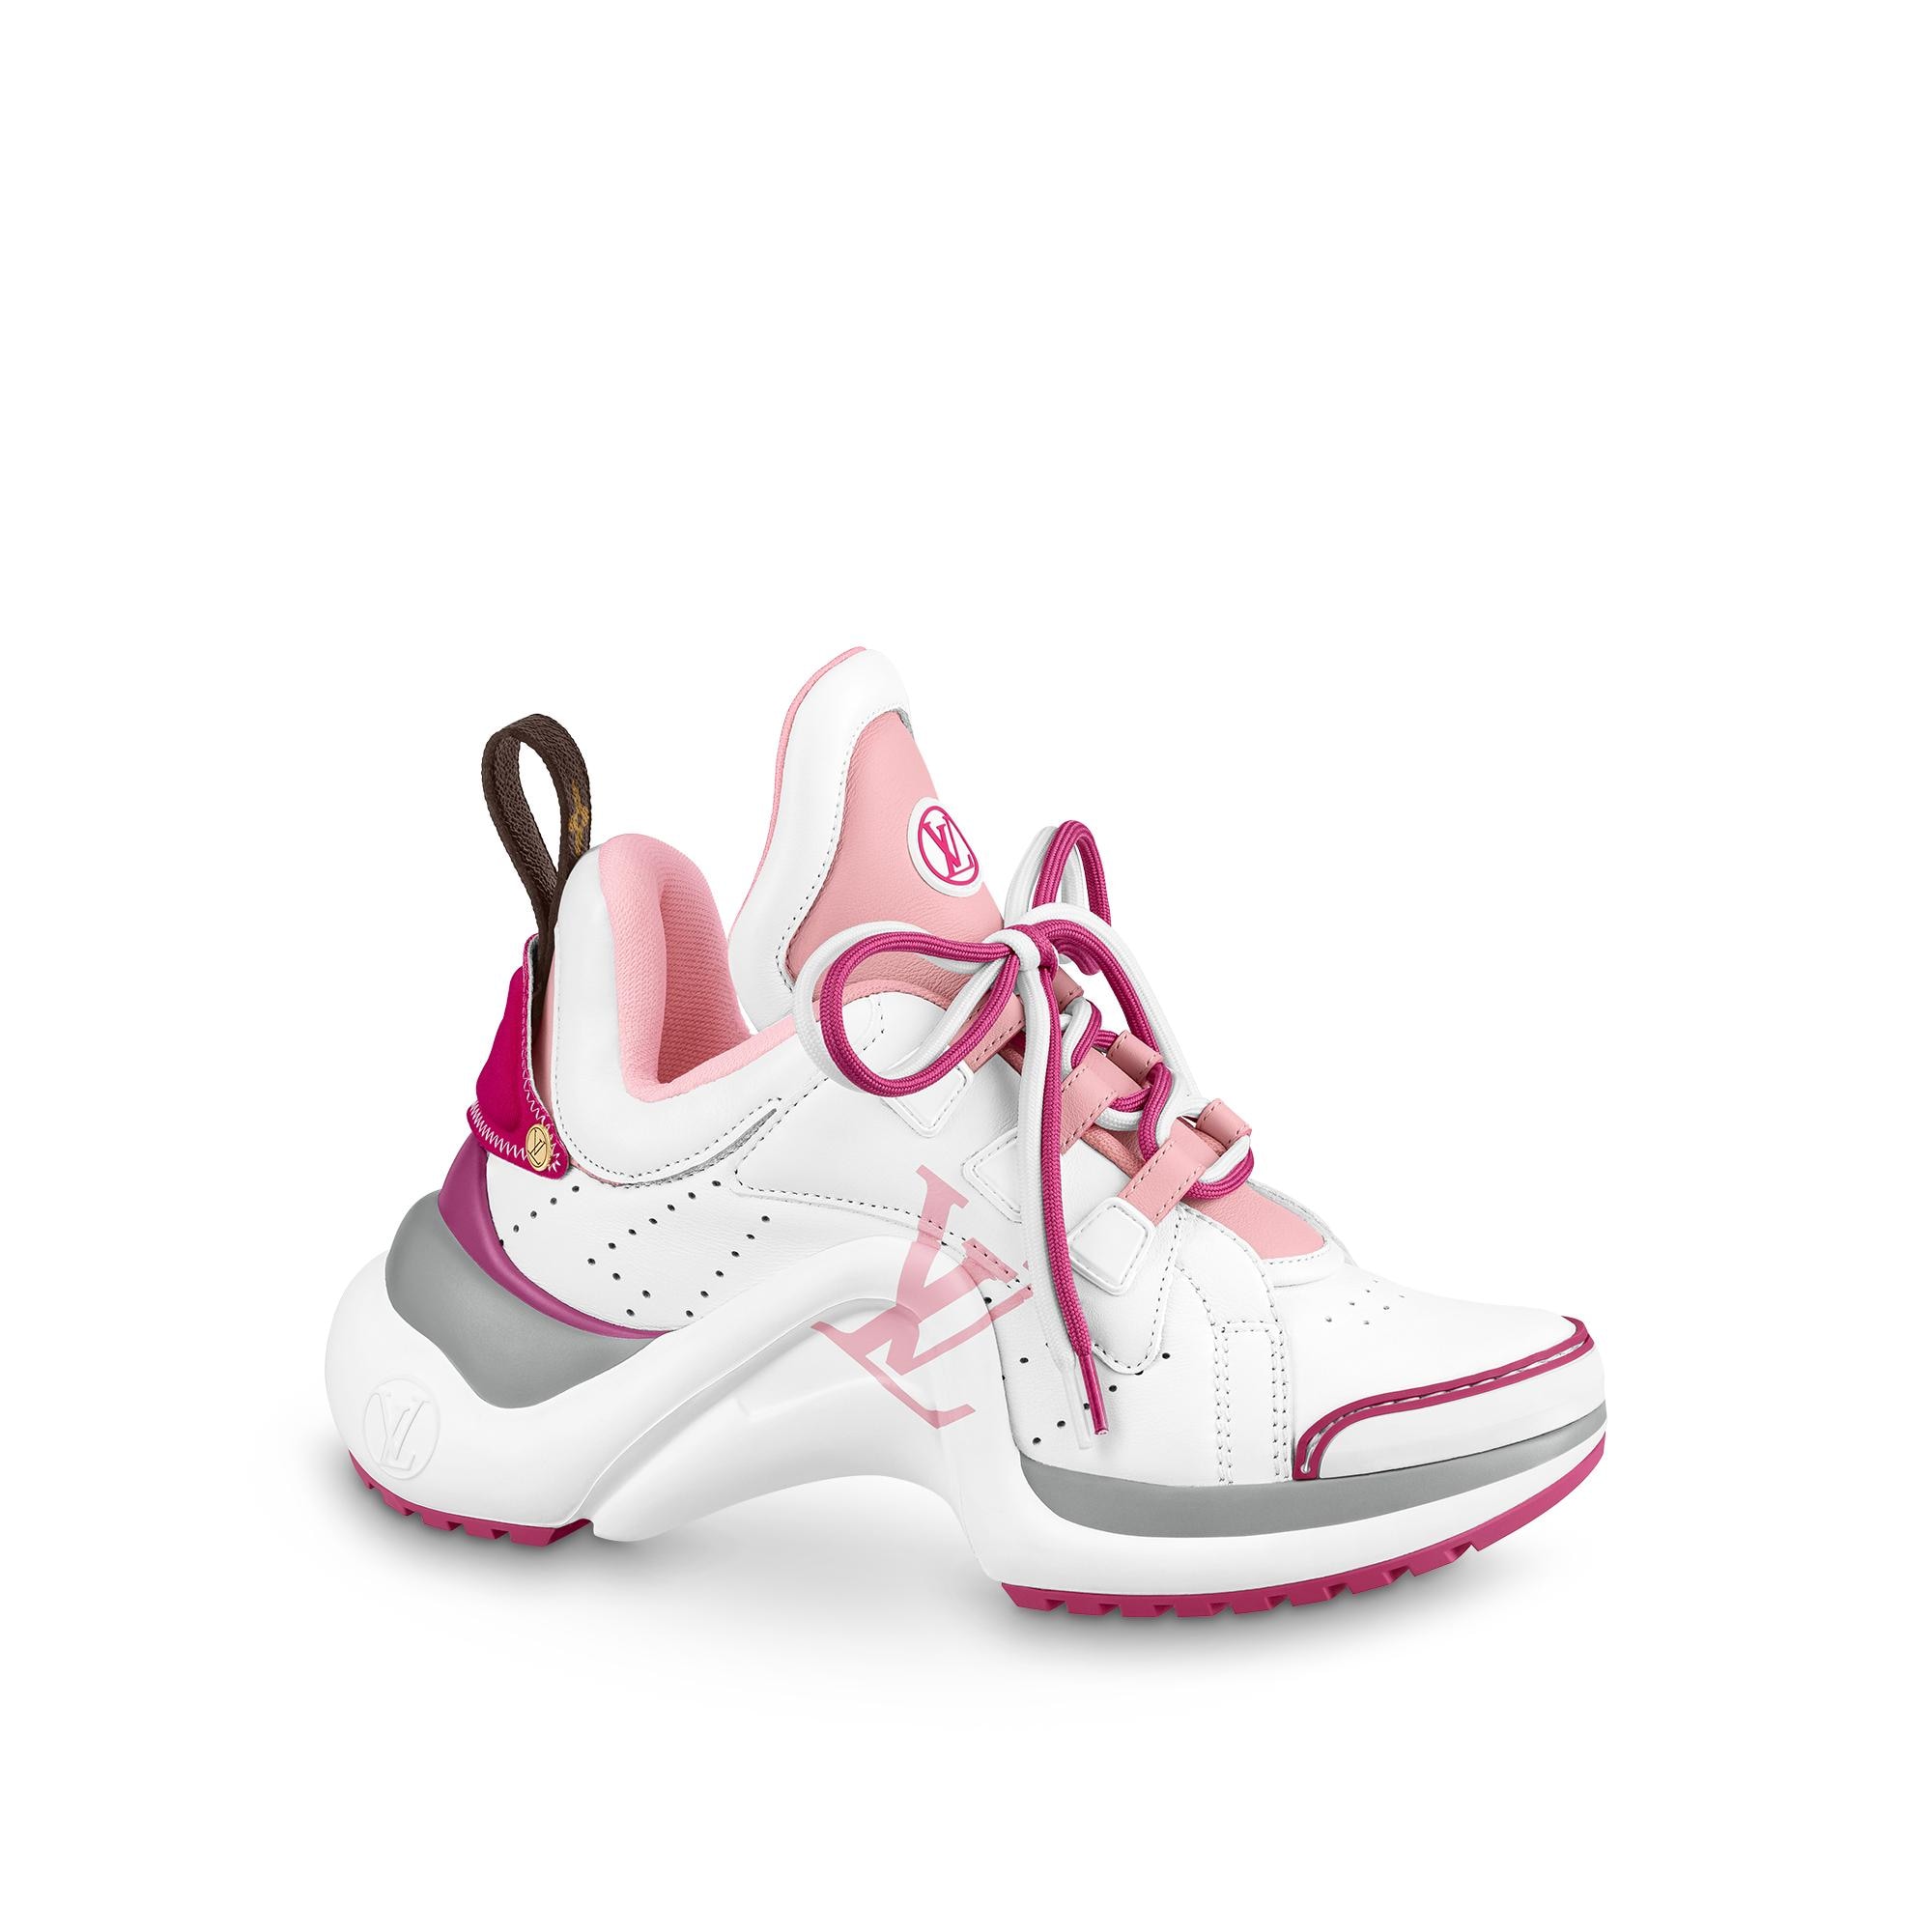 Louis Vuitton Lv Archlight Sneaker – WOMEN – Shoes 1A9SCK